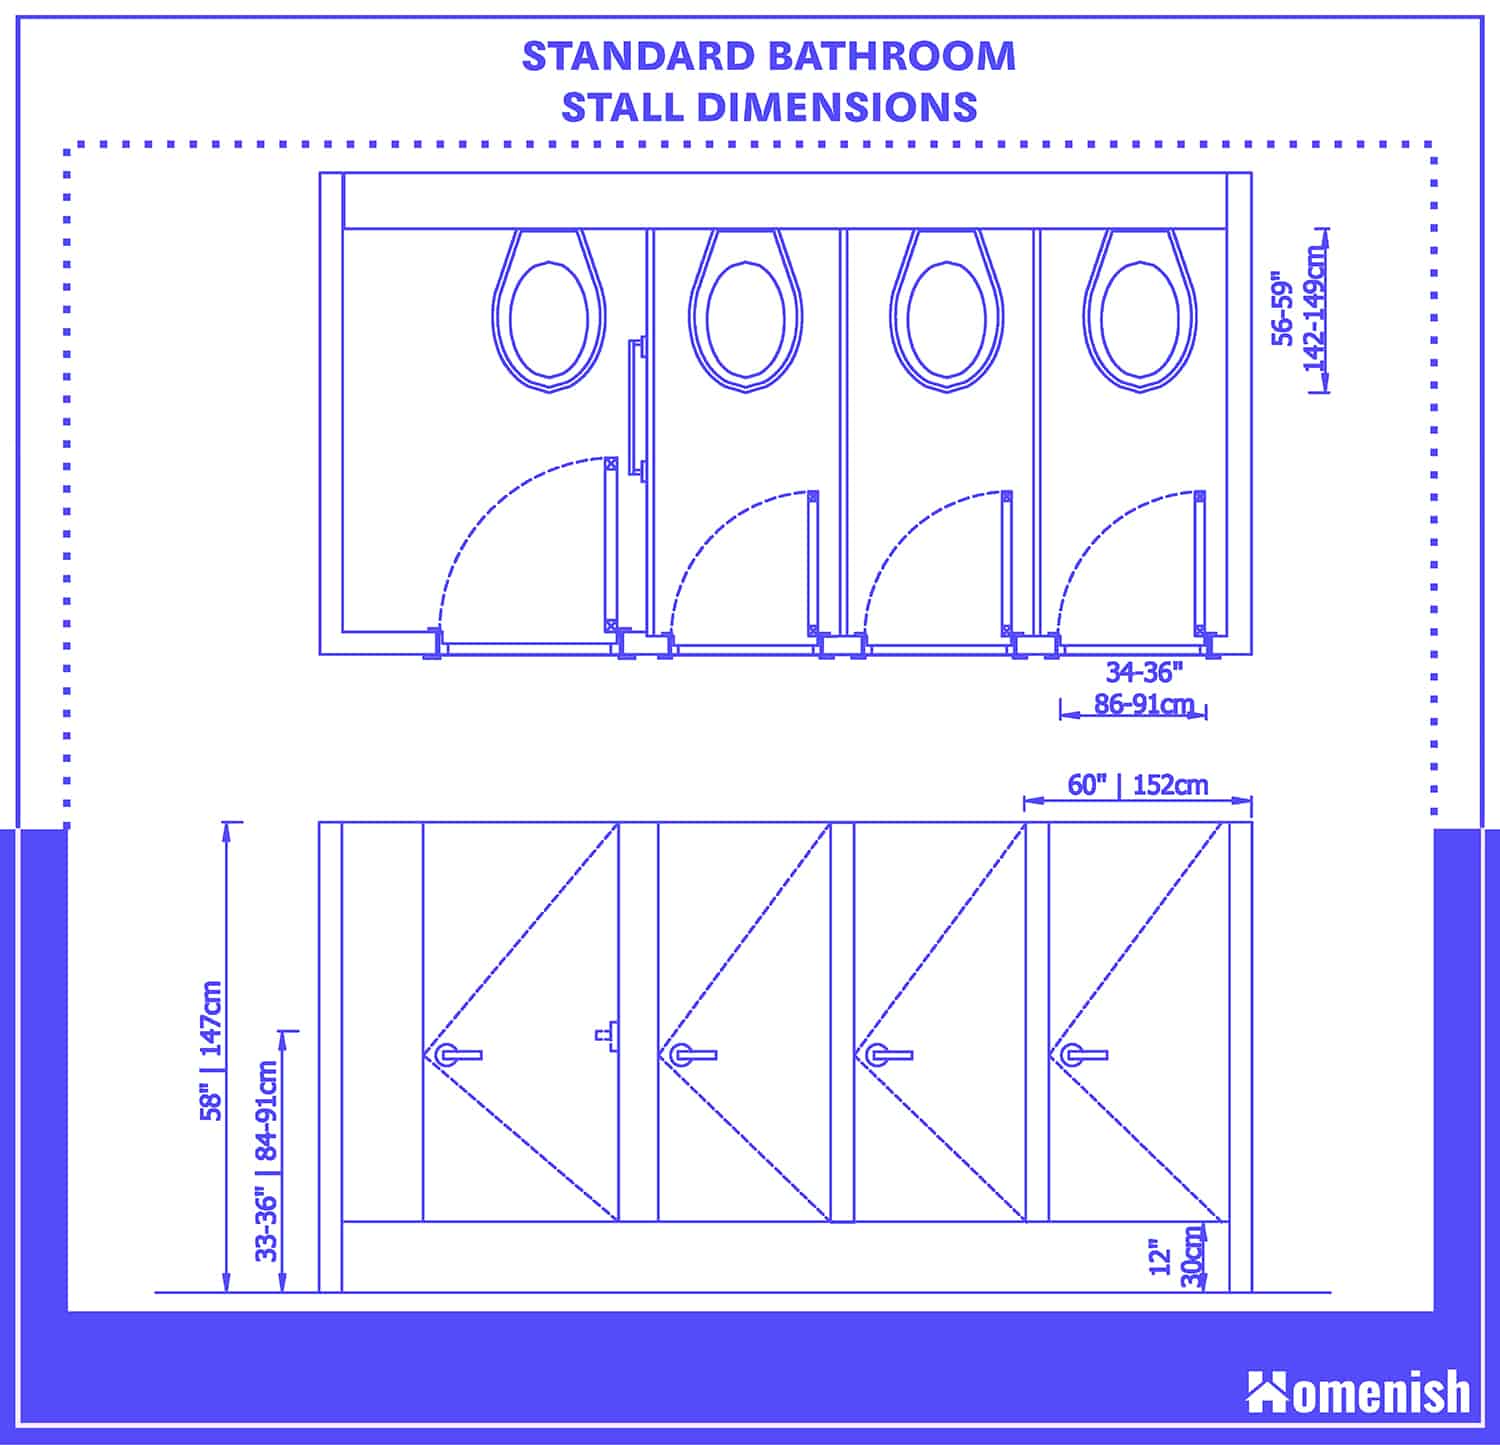 標準浴室攤位尺寸